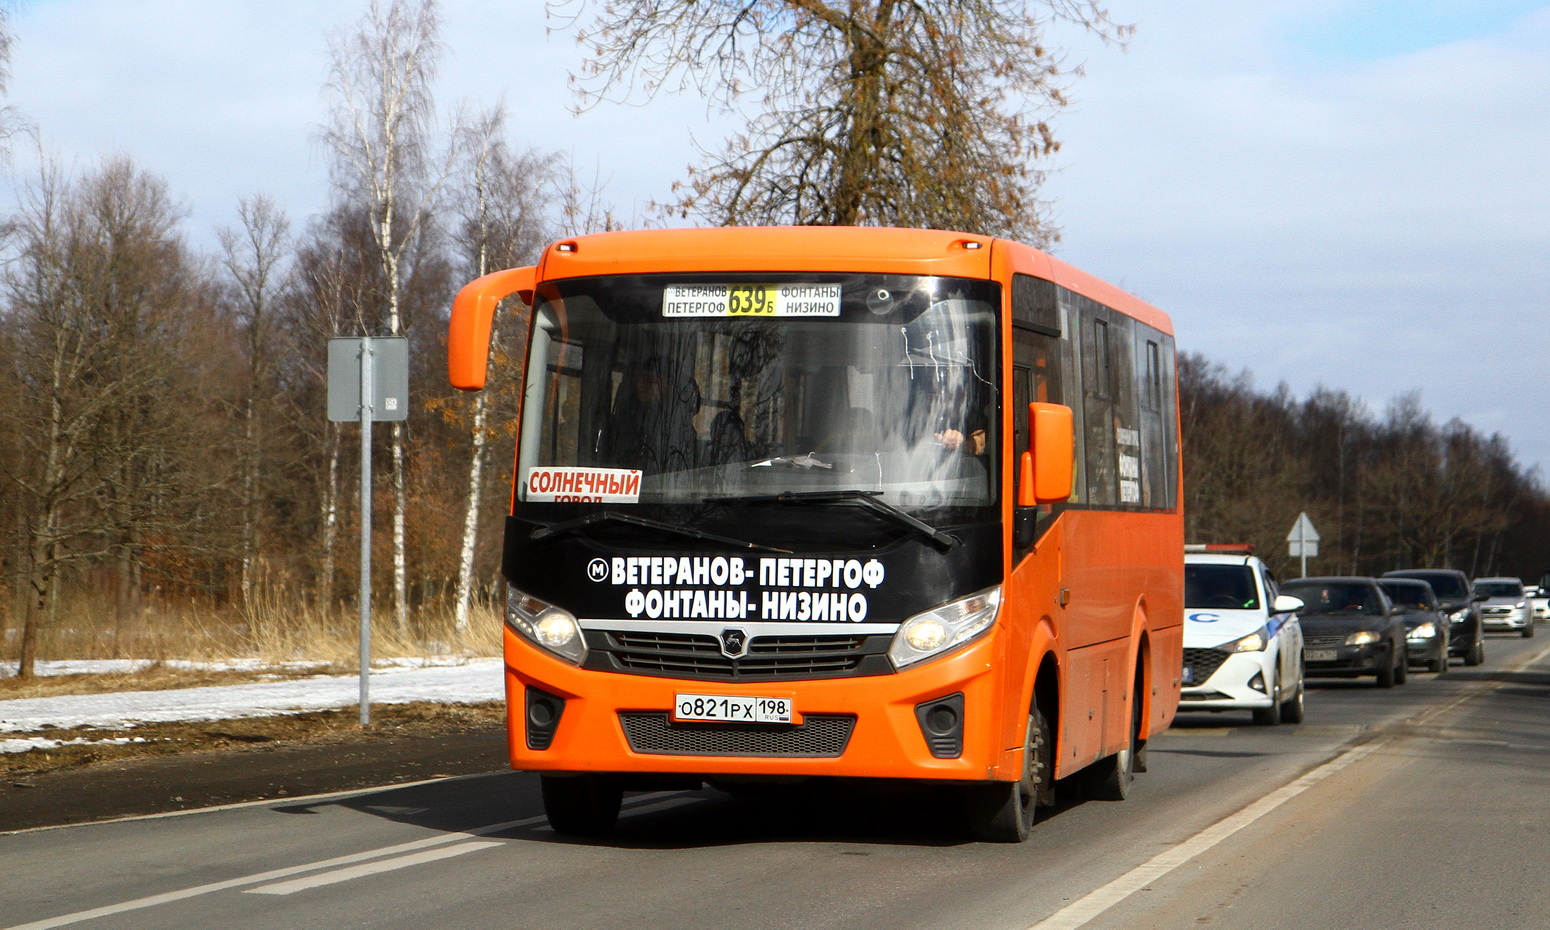 Szentpétervár, PAZ-320405-04 "Vector Next" sz.: О 821 РХ 198